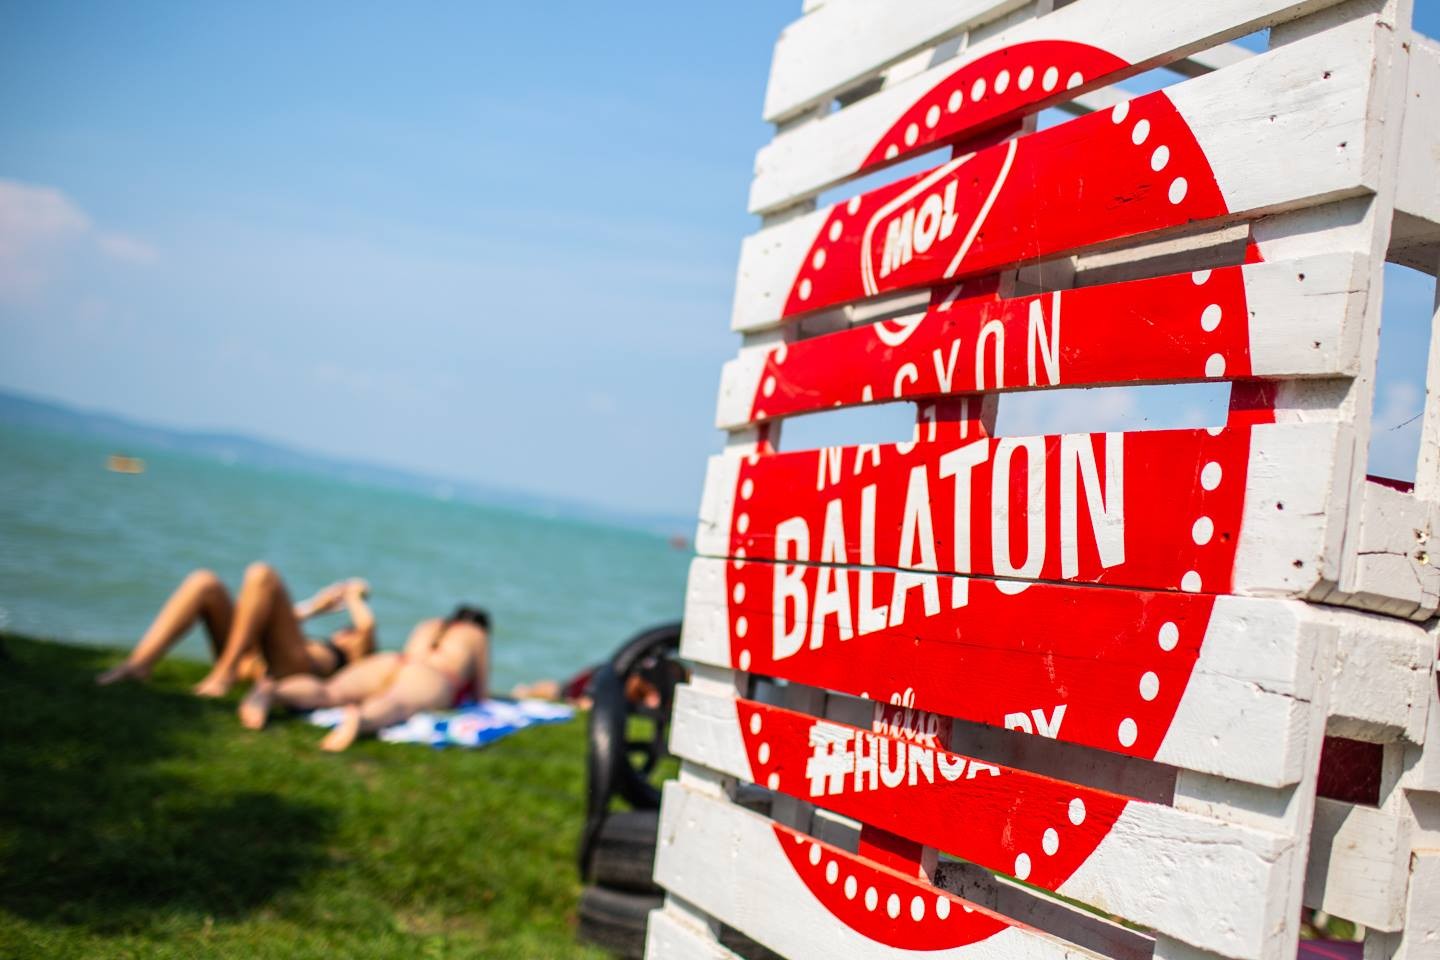 Több mint 1,2 millió fesztiválturistát várnak a Balatonra a hetedik MOL Nagyon Balaton programjaira